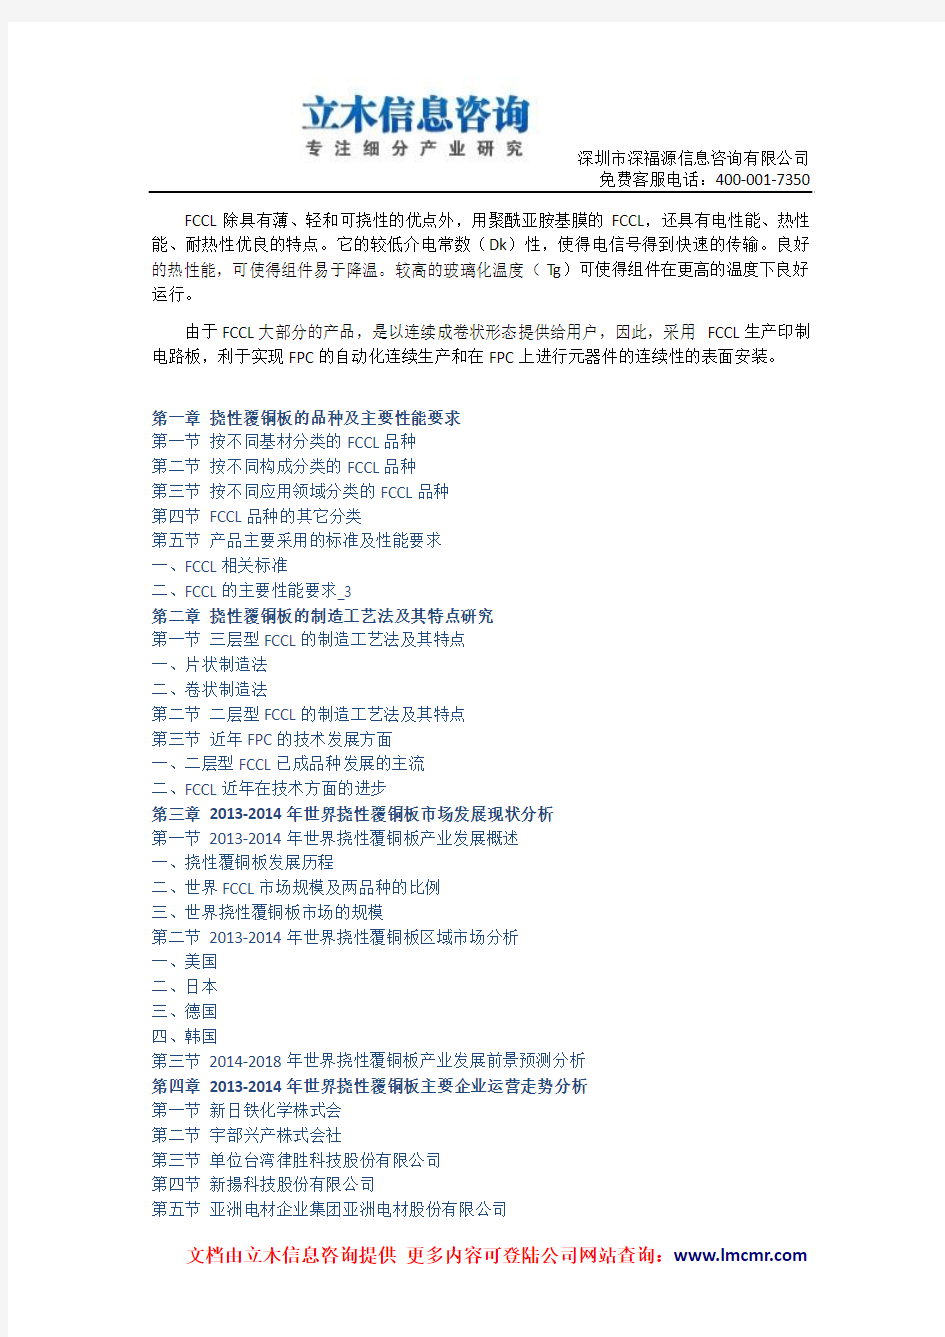 中国挠性覆铜板(FCCL)市场预测及投资评估报告(2014版)